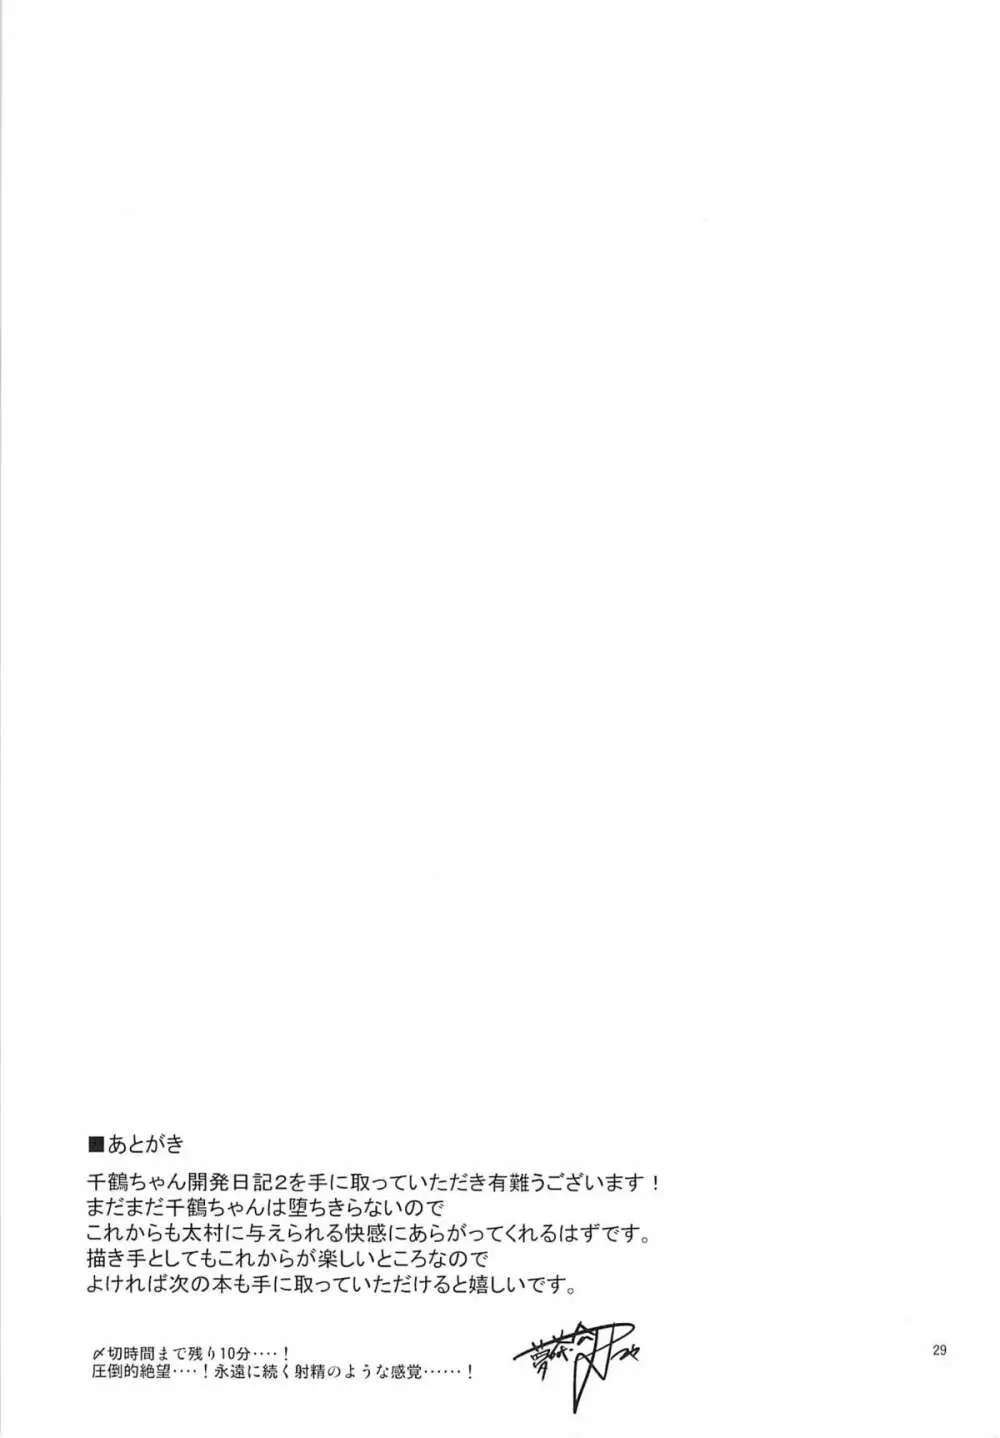 千鶴ちゃん開発日記2 28ページ